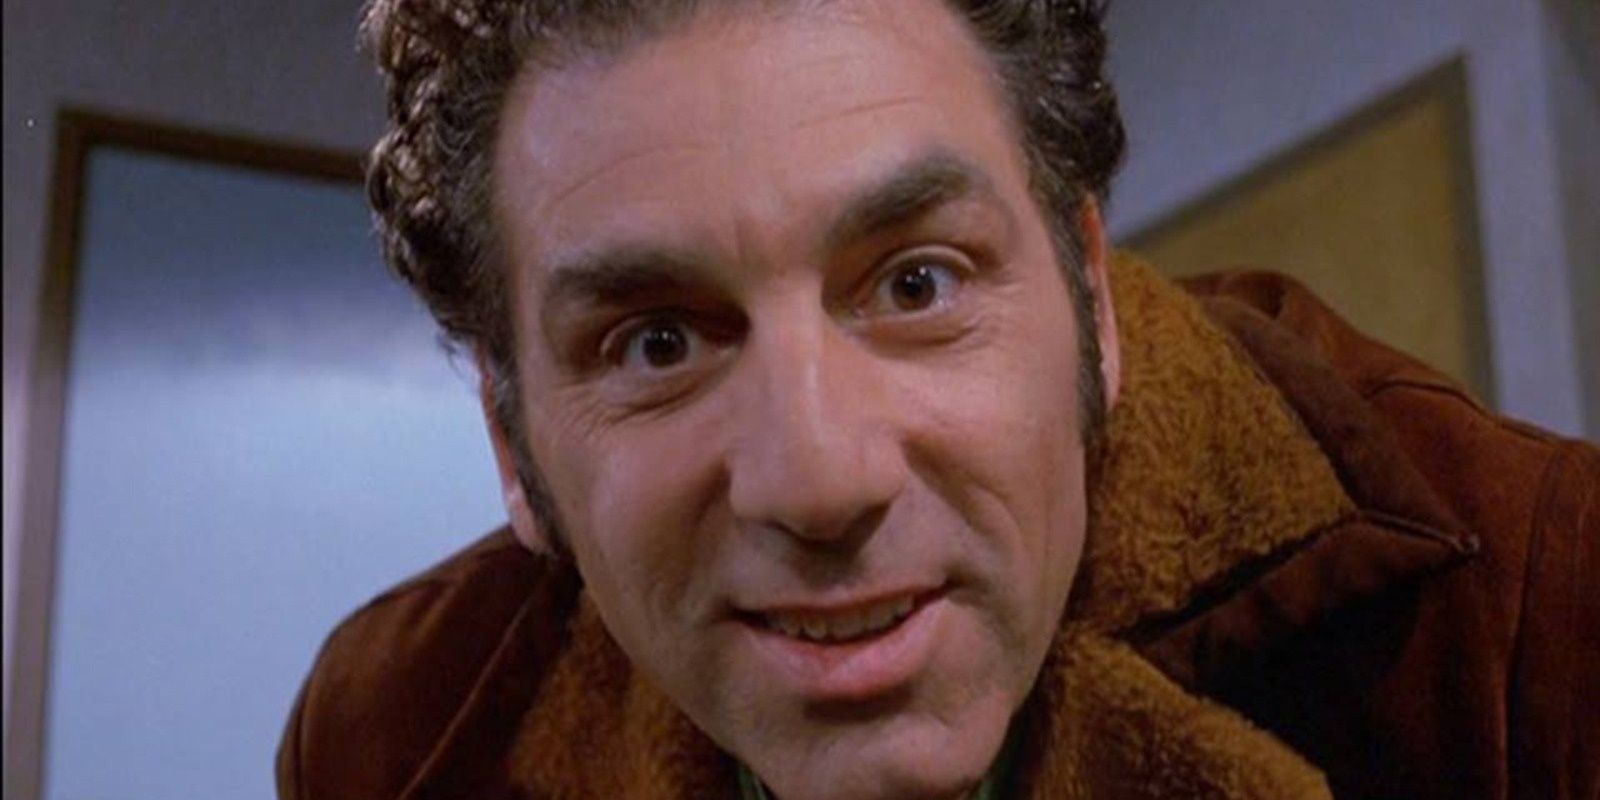 Seinfeld - Kramer looking into camera